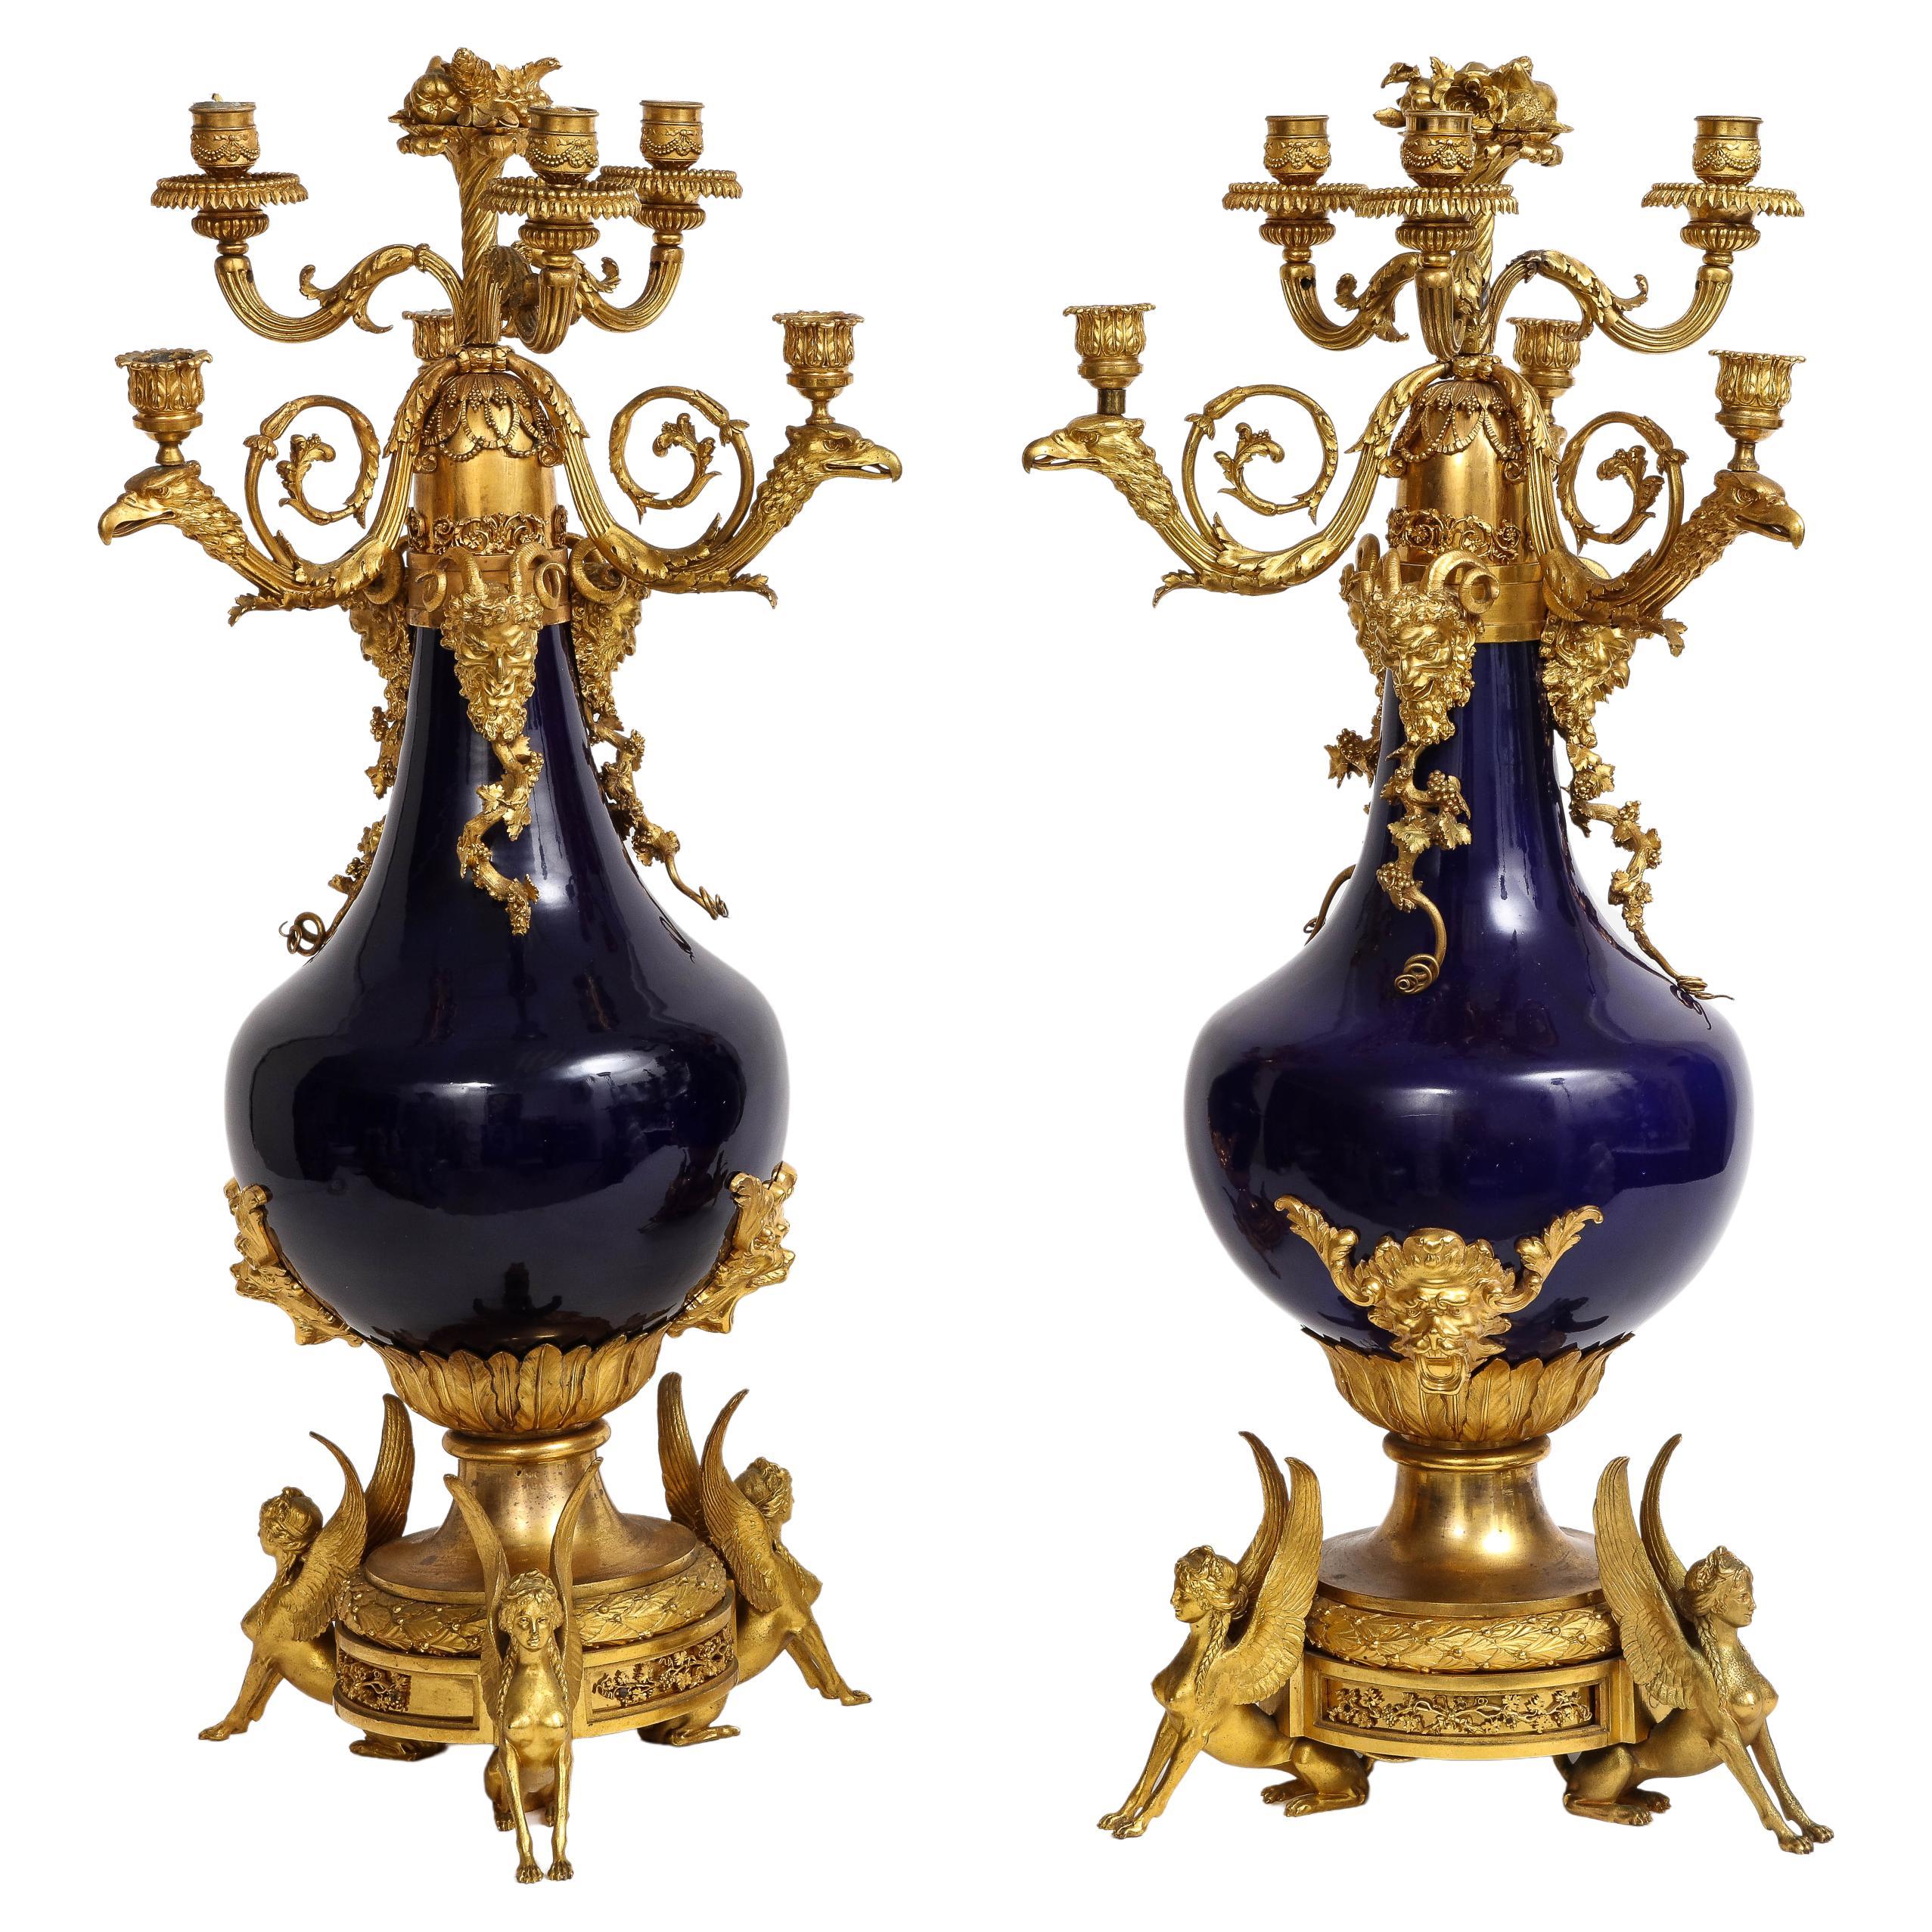 Paire de candélabres français en porcelaine bleue montés en bronze doré, att. Henry Dasson